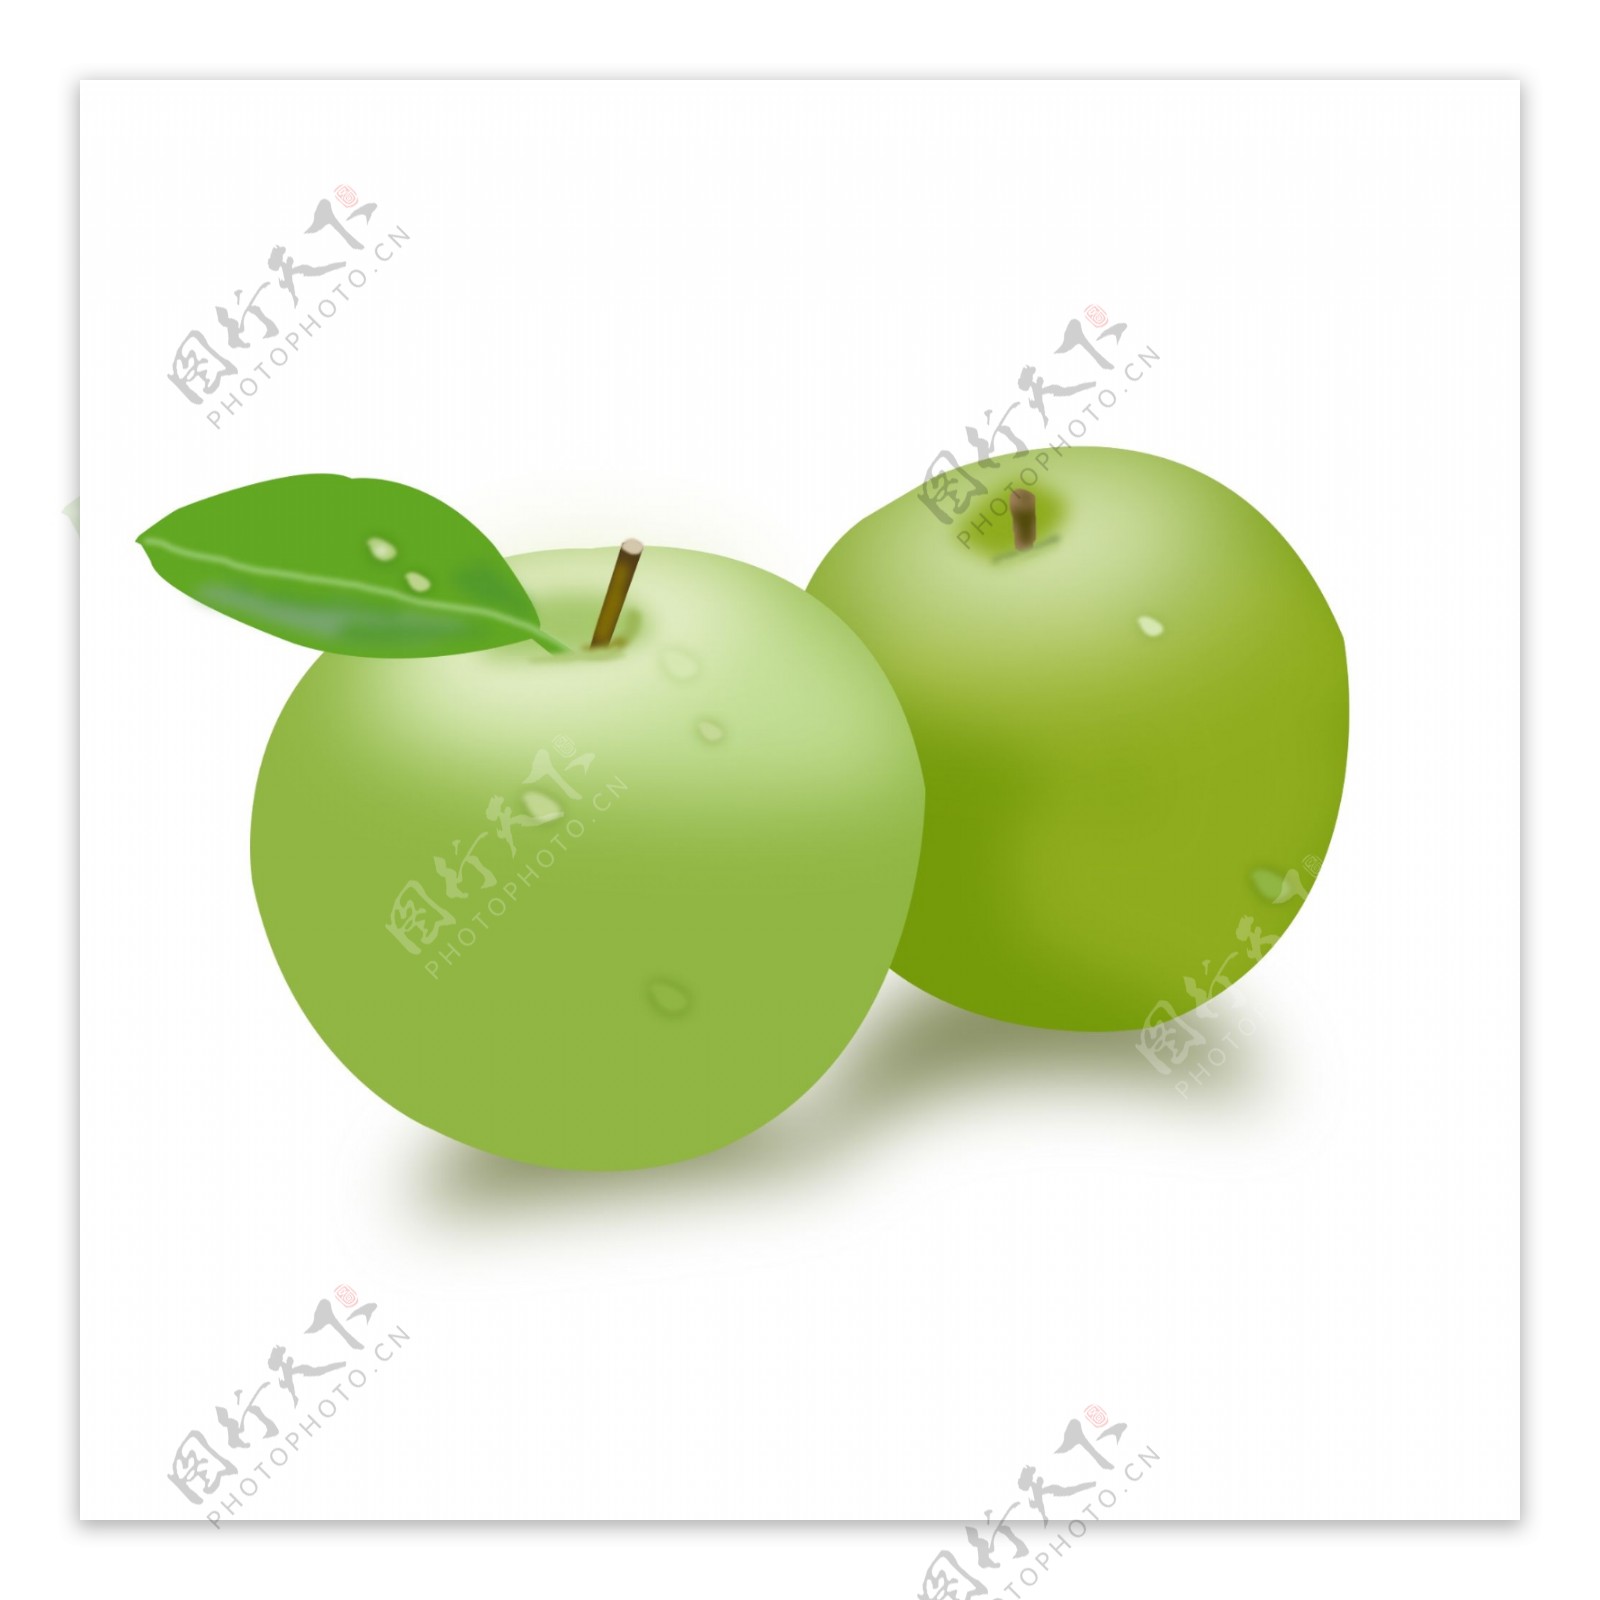 二十四节气原创鼠绘处暑水果苹果元素设计